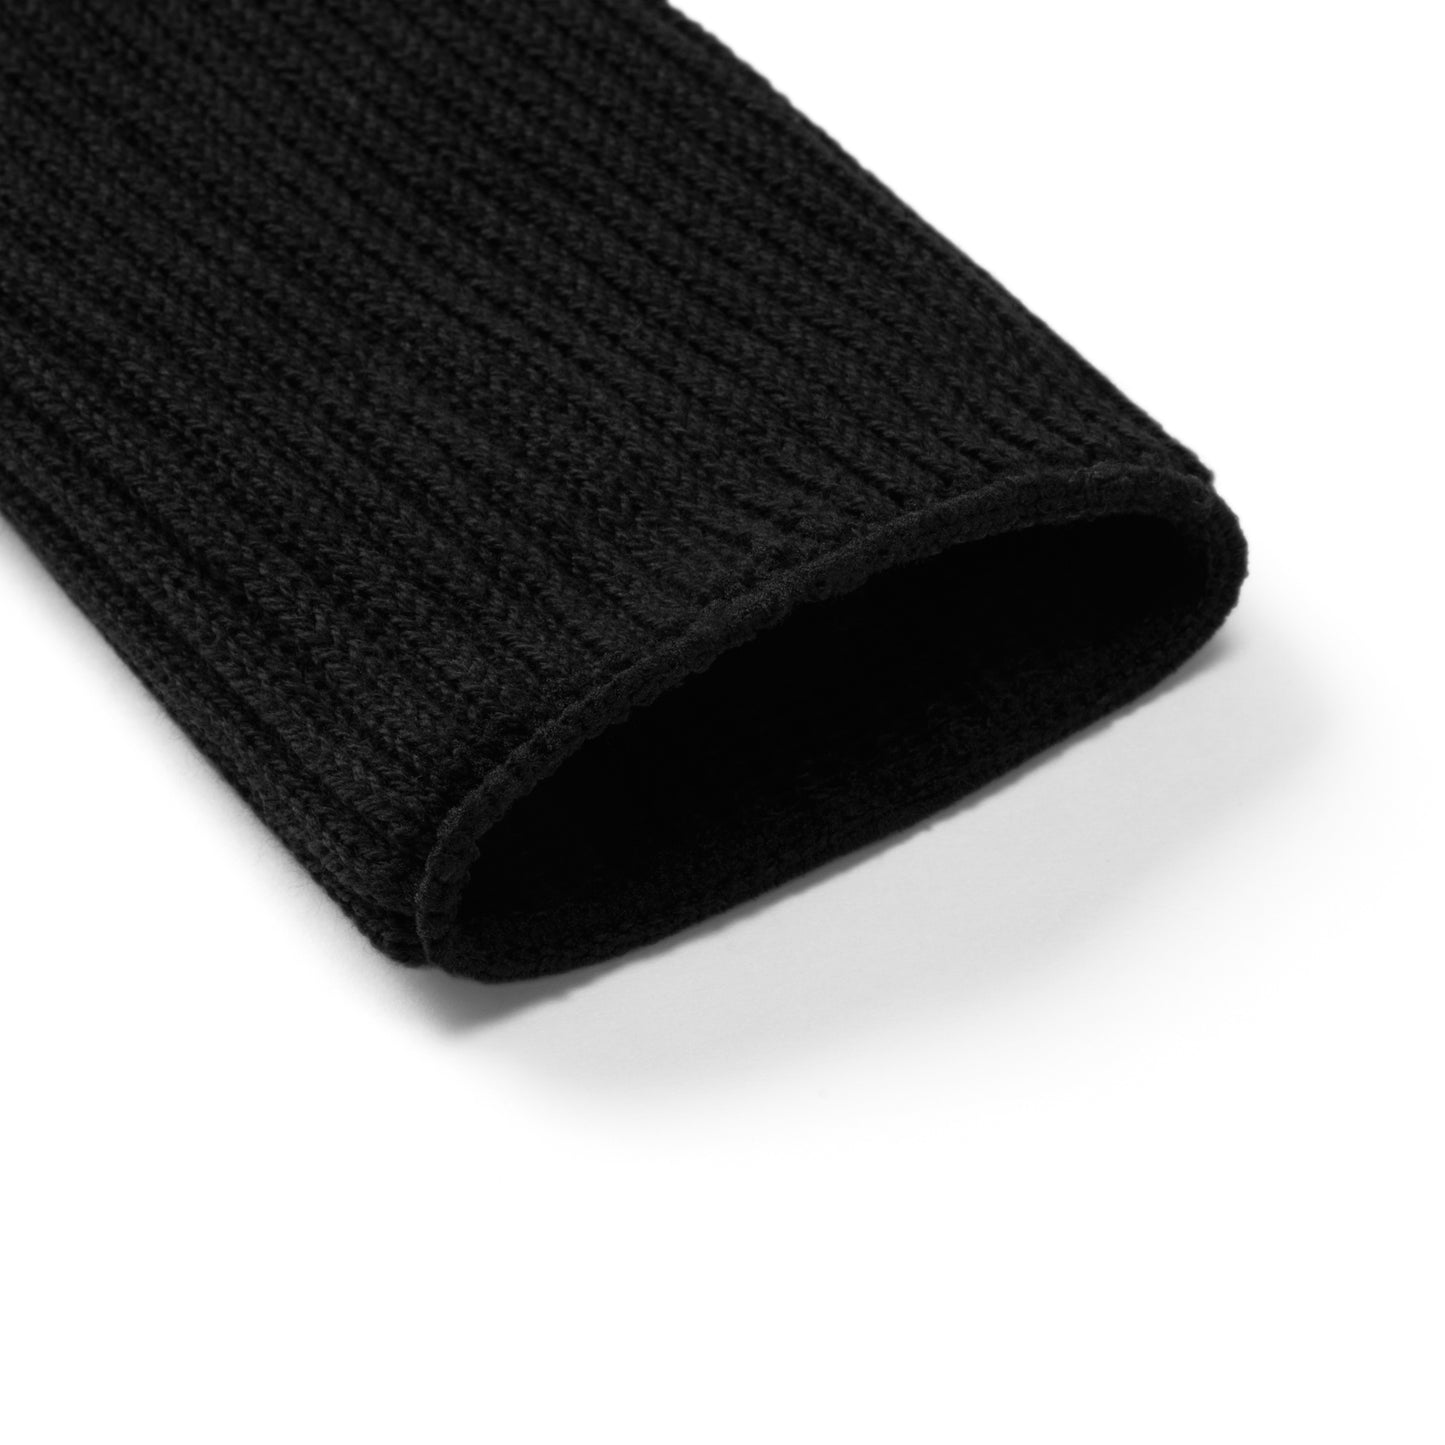 Winiche & CO. × Helinox Tabi Slouch Socks - Black